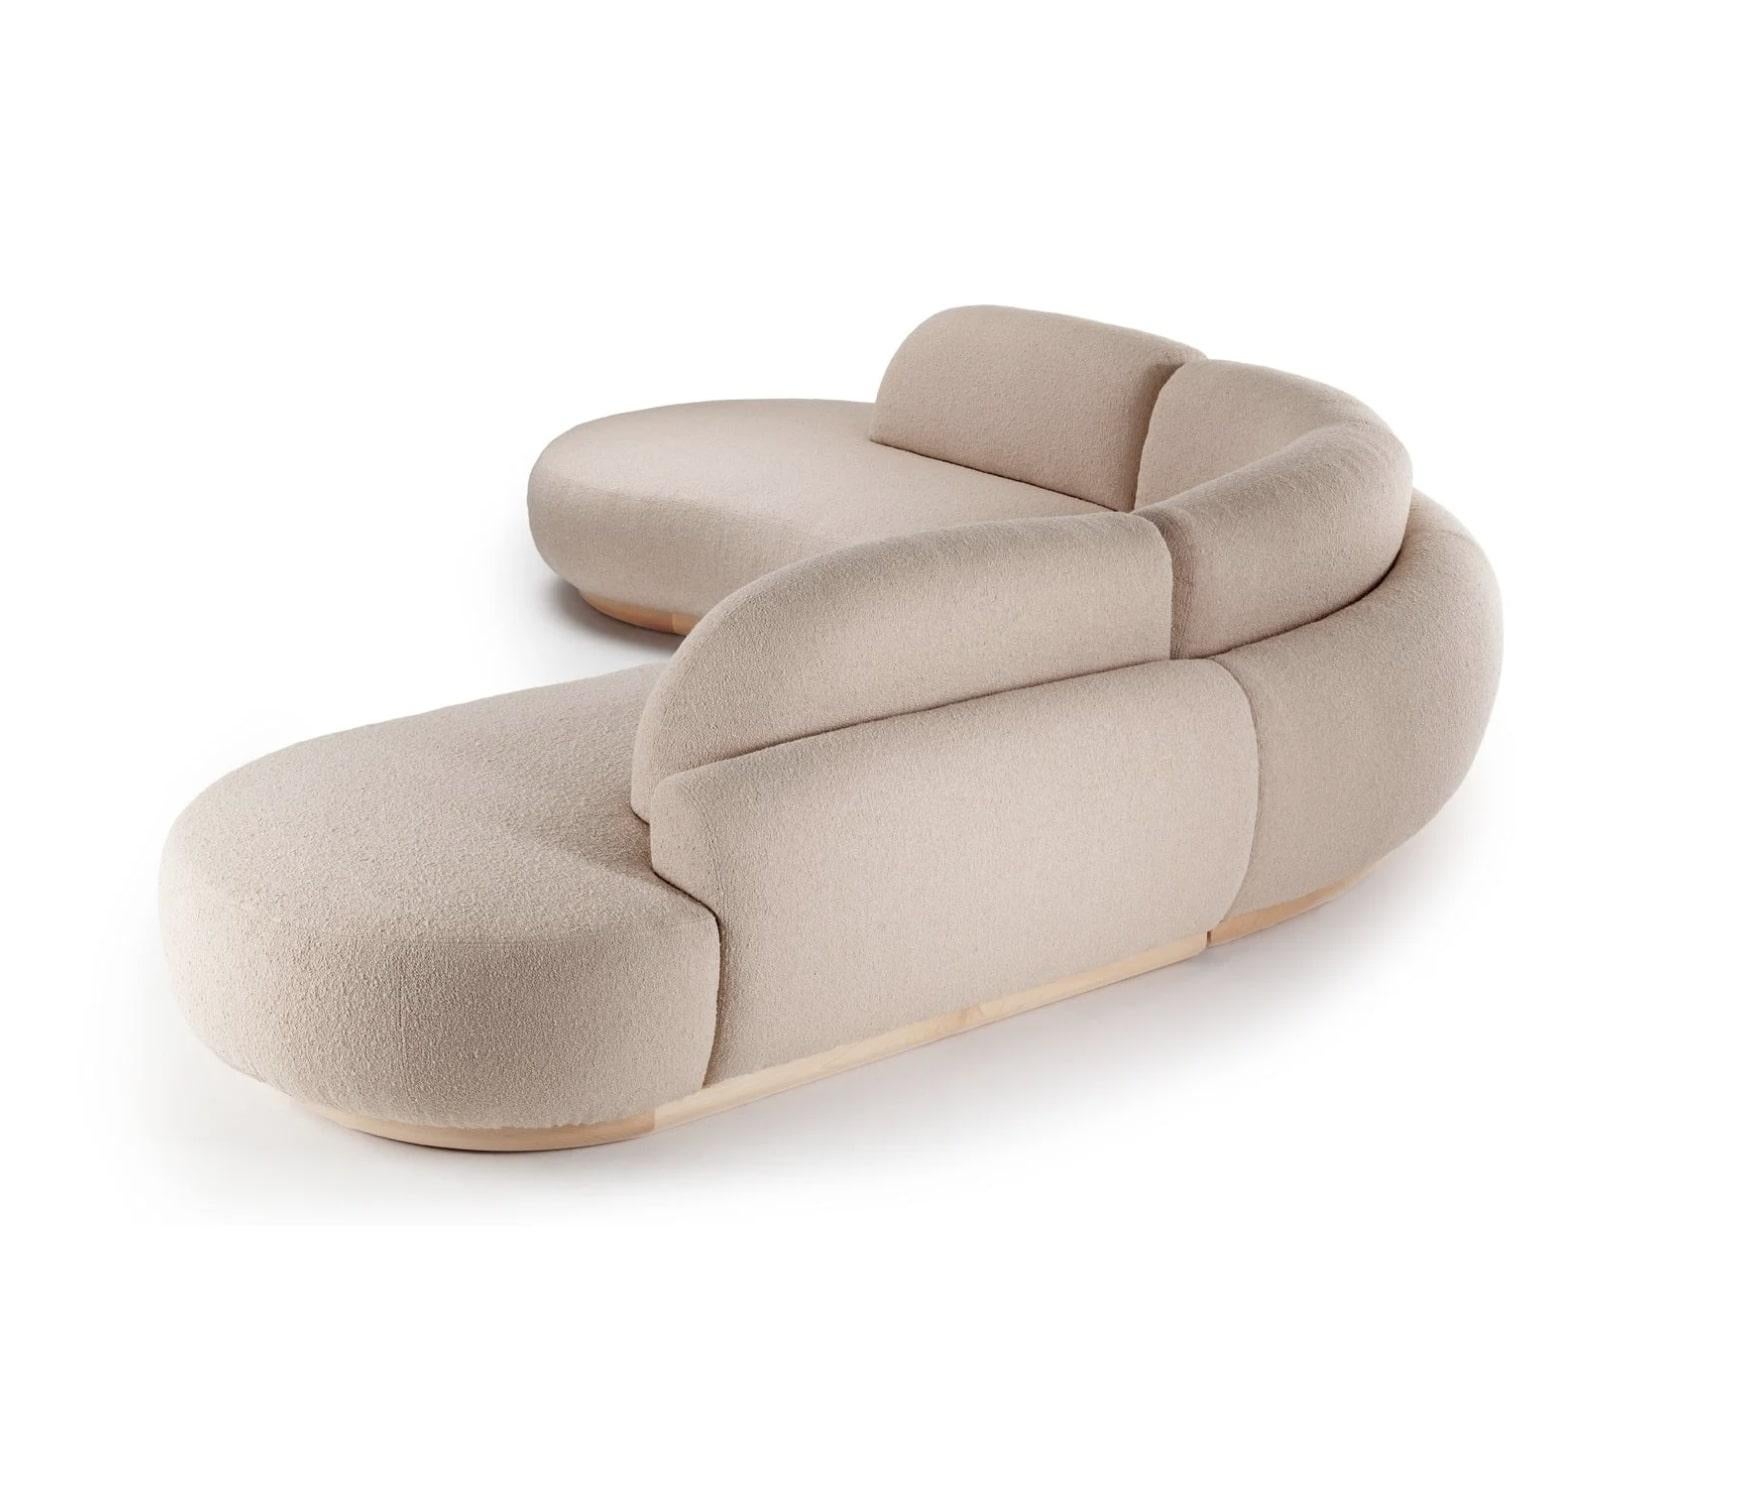 Le canapé Naked révèle des formes sculpturales et organiques destinées à embrasser l'utilisateur et à l'encourager à rester assis dans cette pièce douillette et confortable. Le confort étant le point de départ constant de ce design, les formes